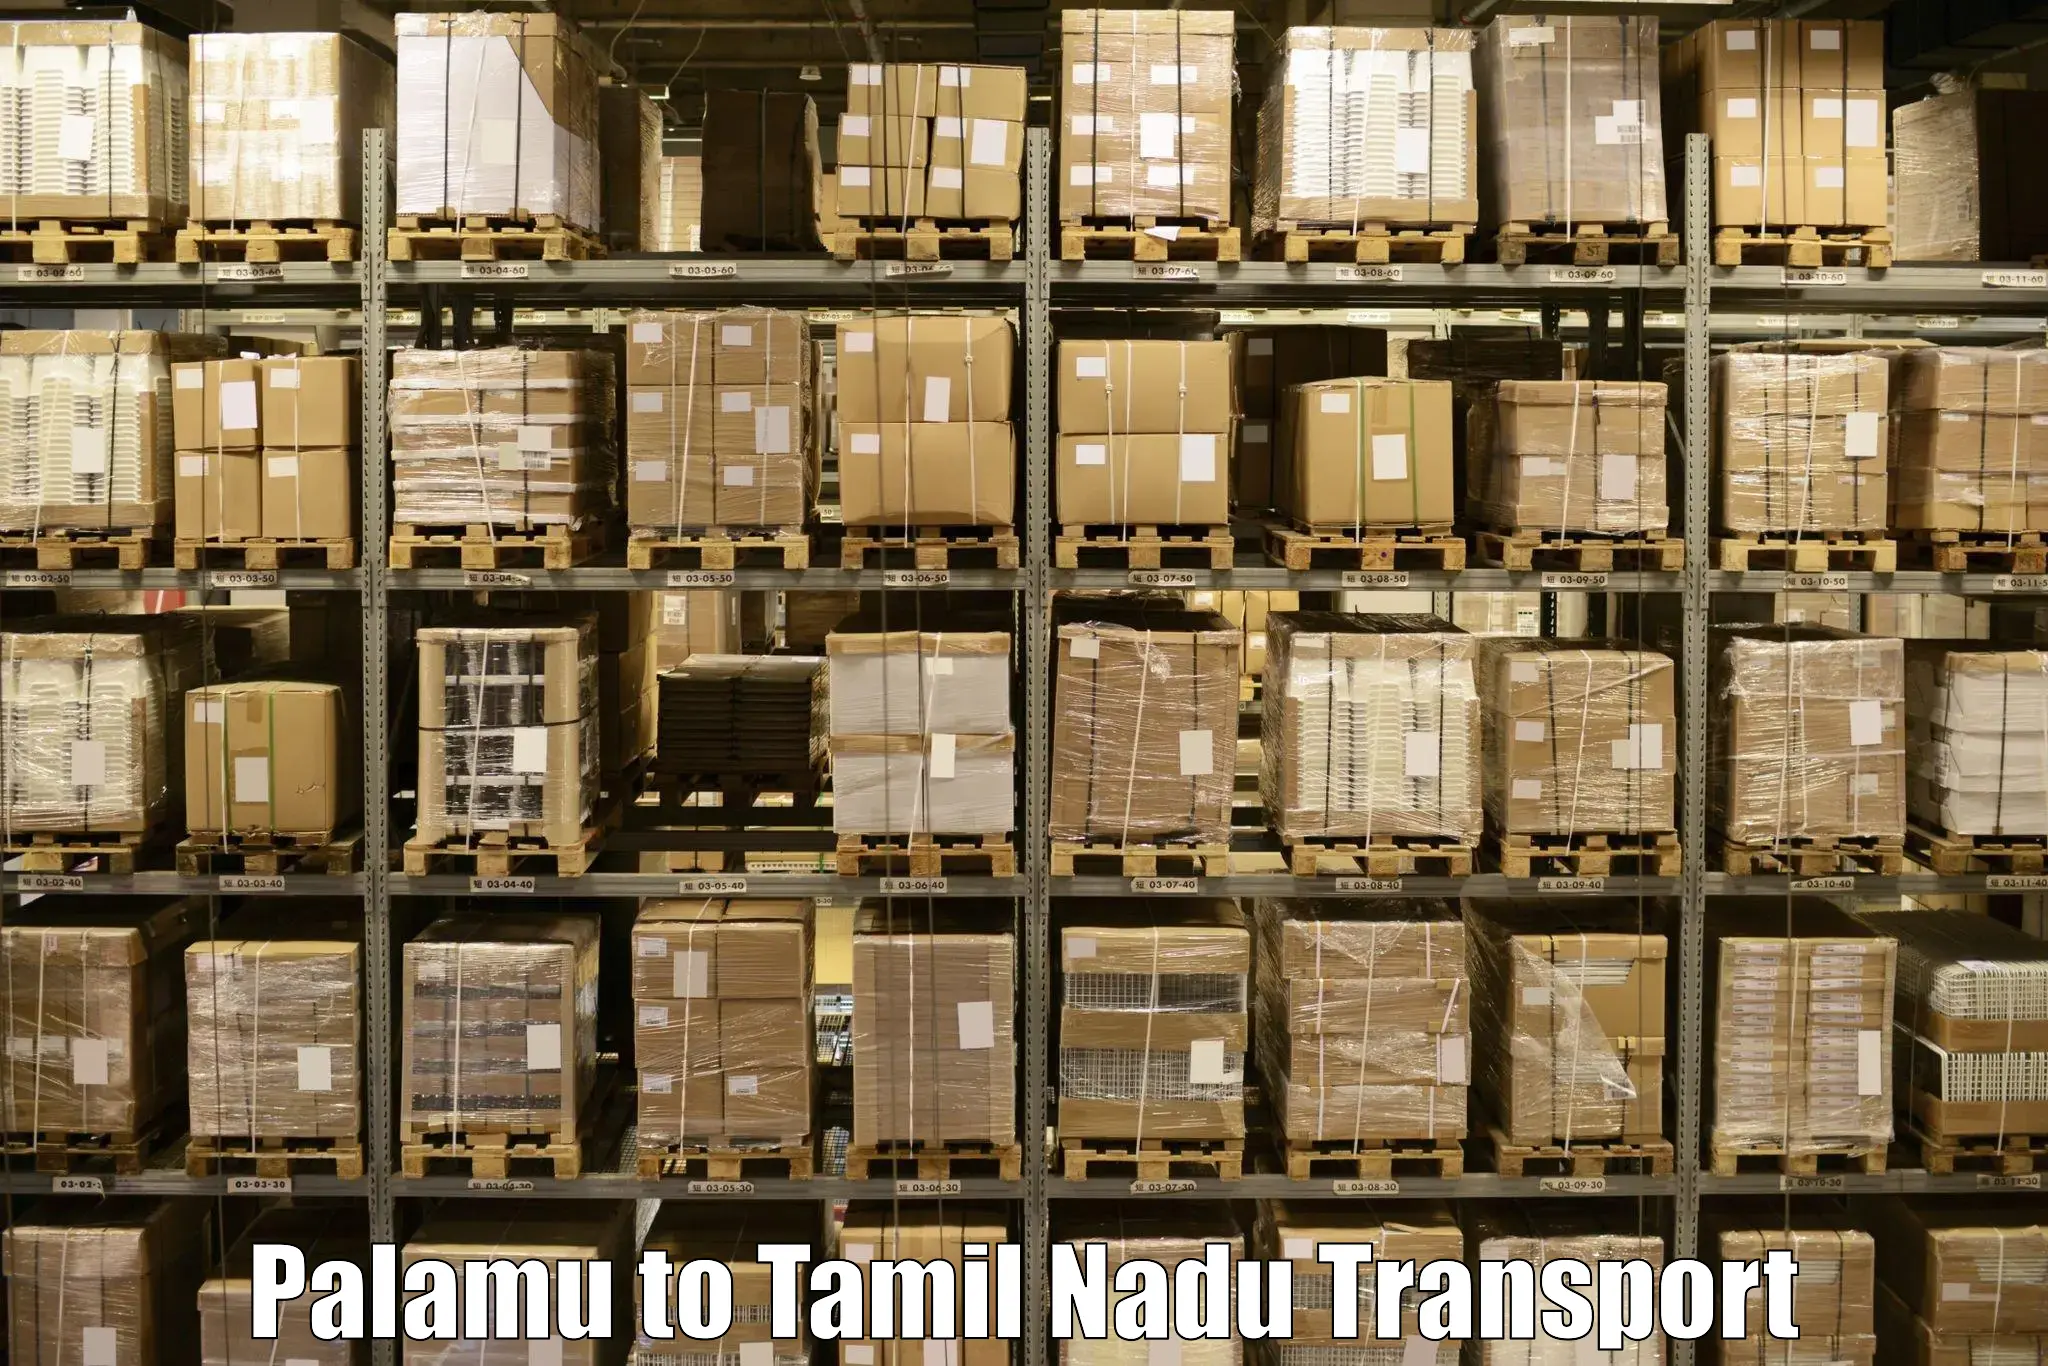 Daily parcel service transport Palamu to Tamil Nadu